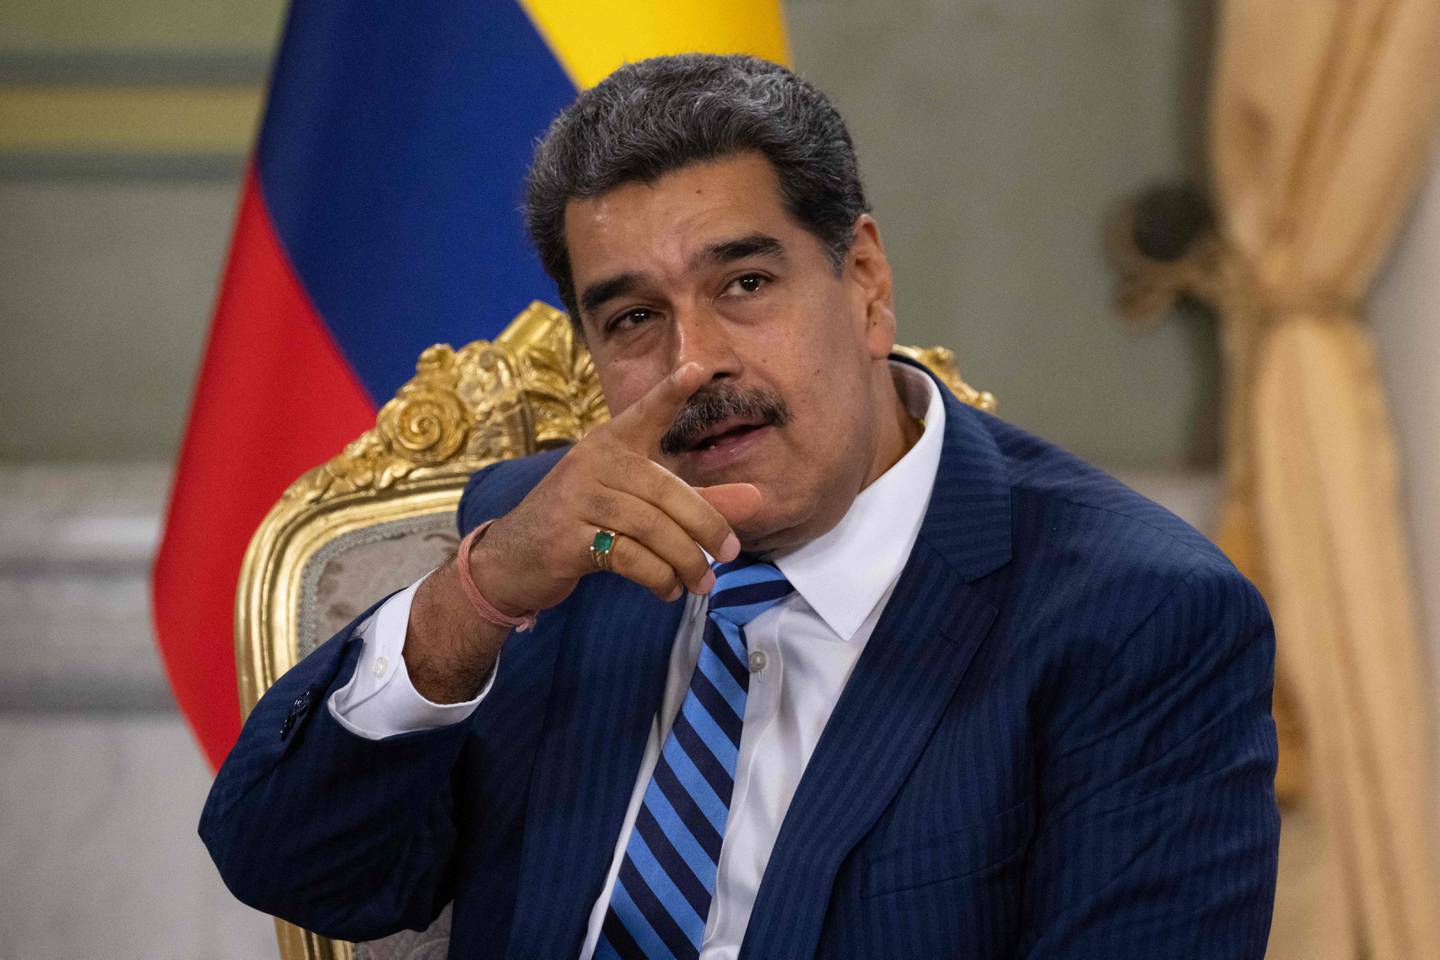 Estados Unidos reimpone sanciones petroleras a Venezuela por bloqueo electoral a oposición